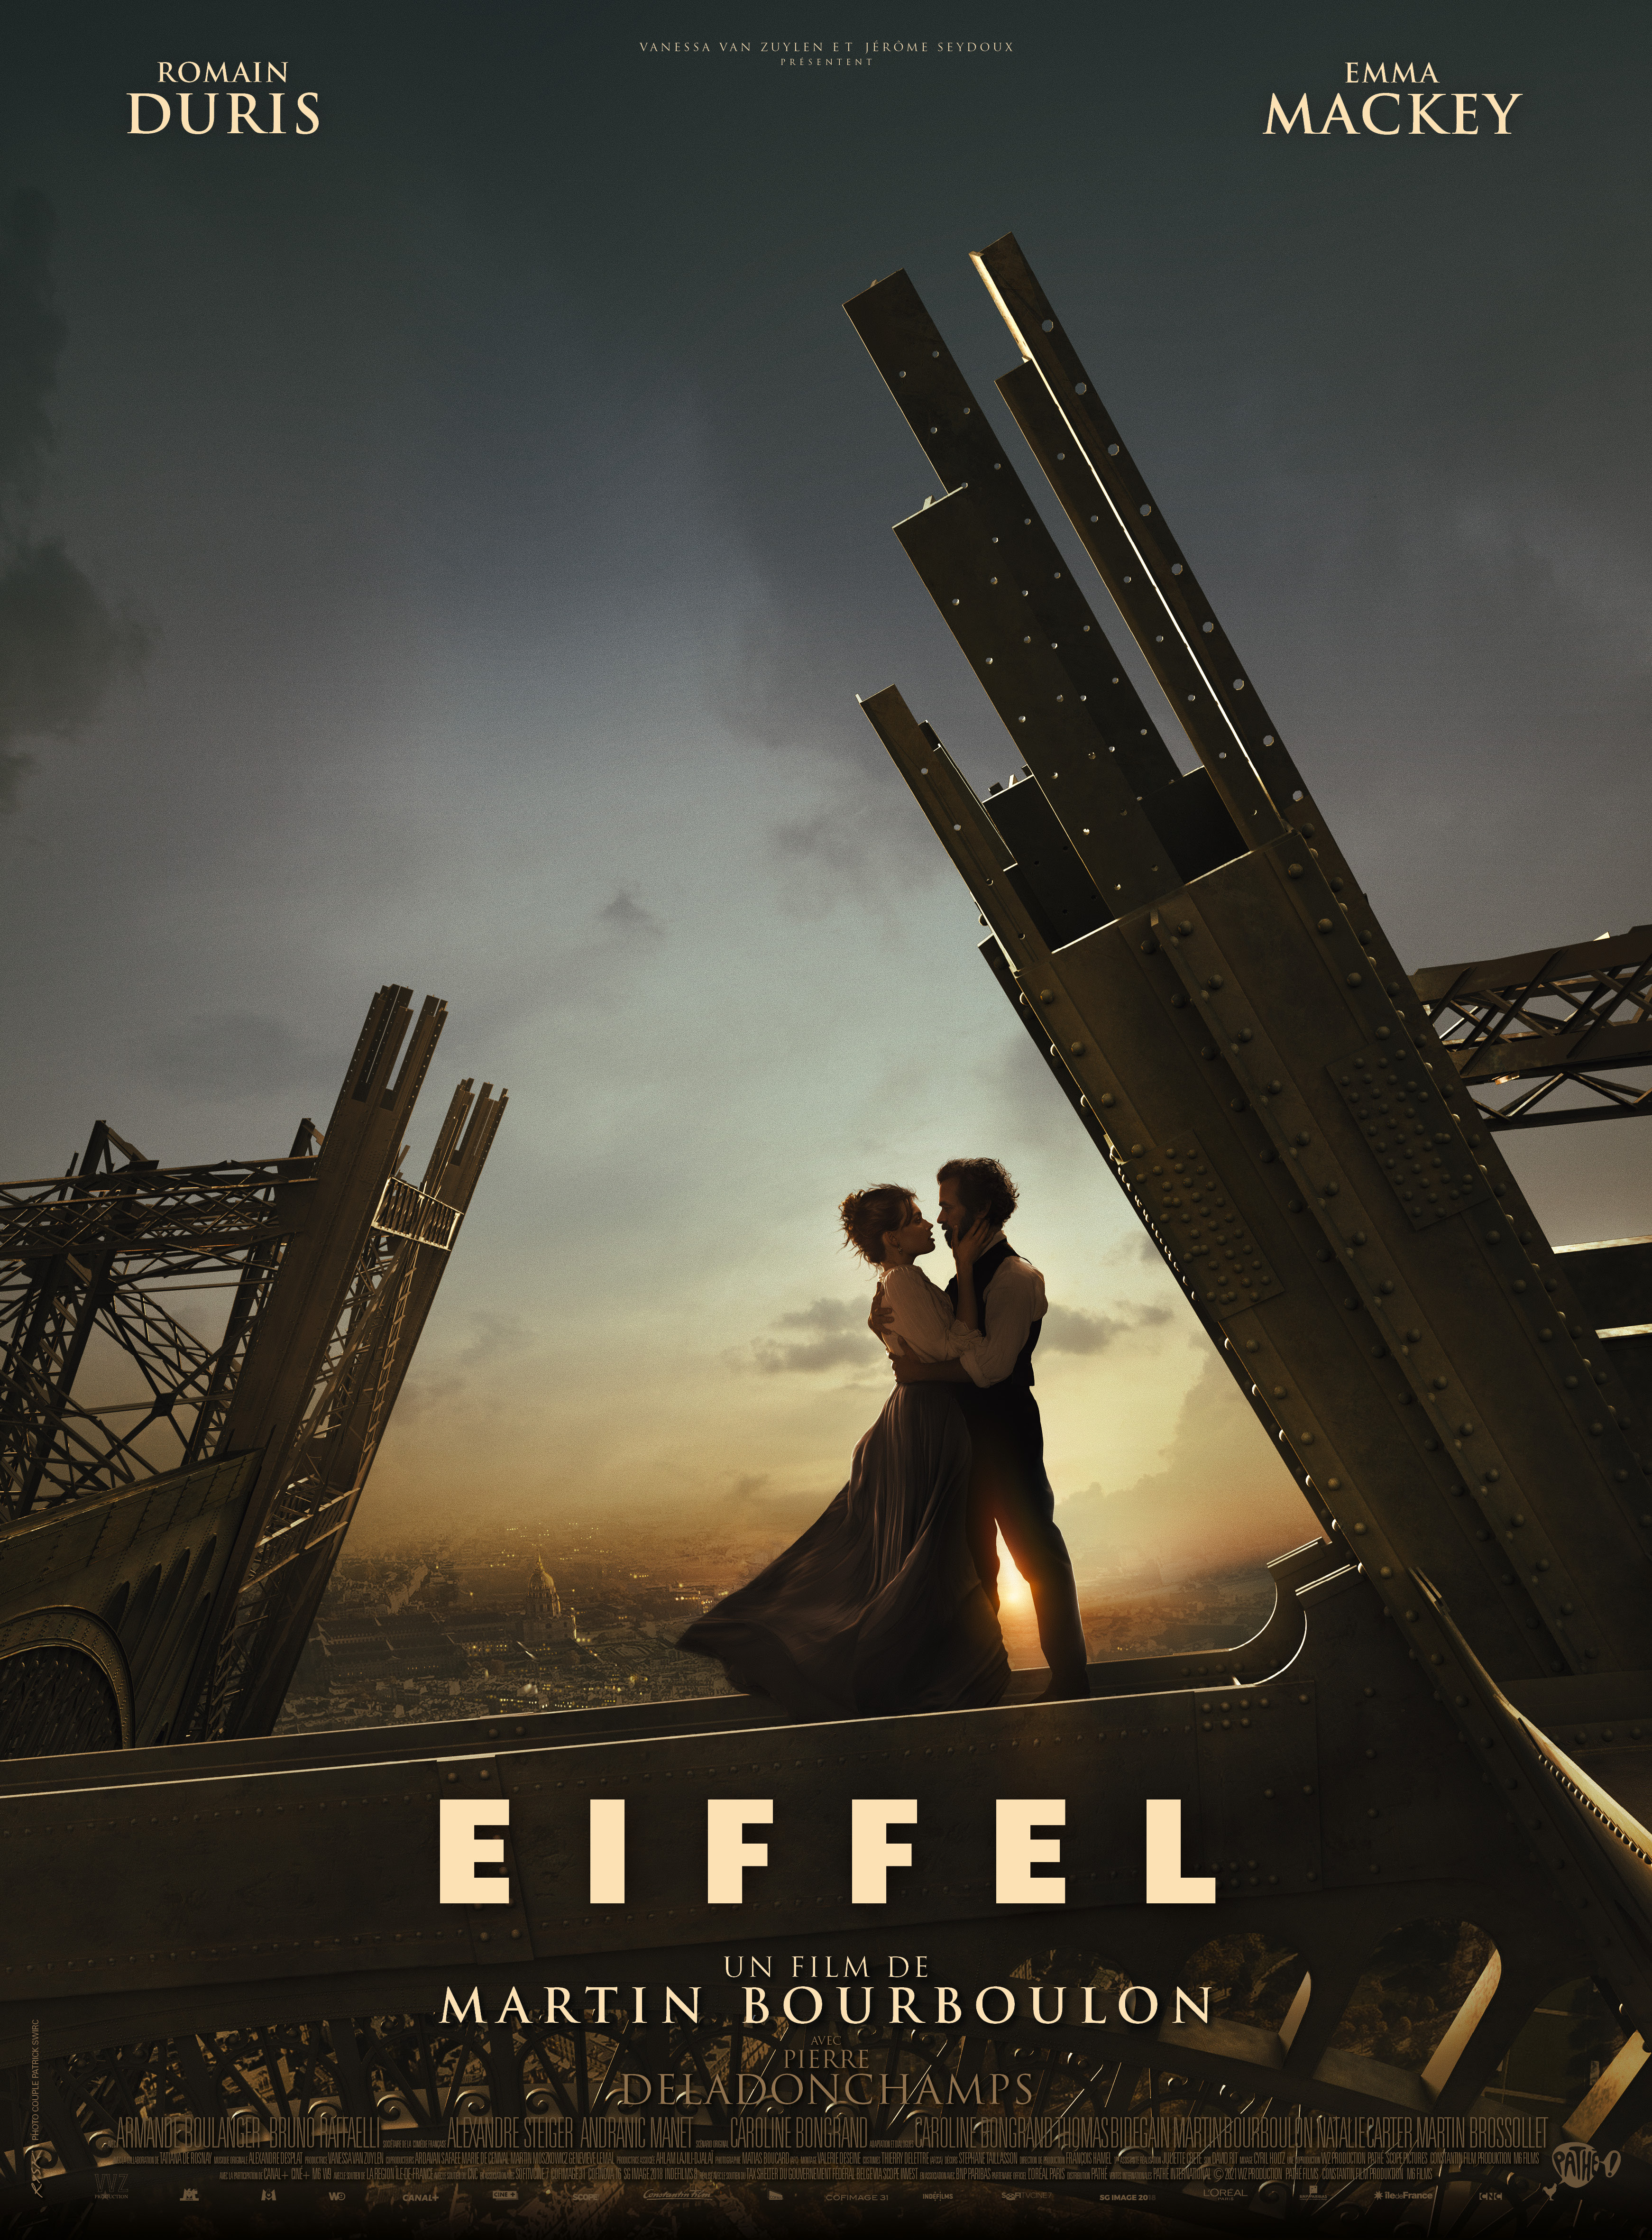 "Eiffel" dévoile enfin sa bande-annonce et ça semble grandiose !